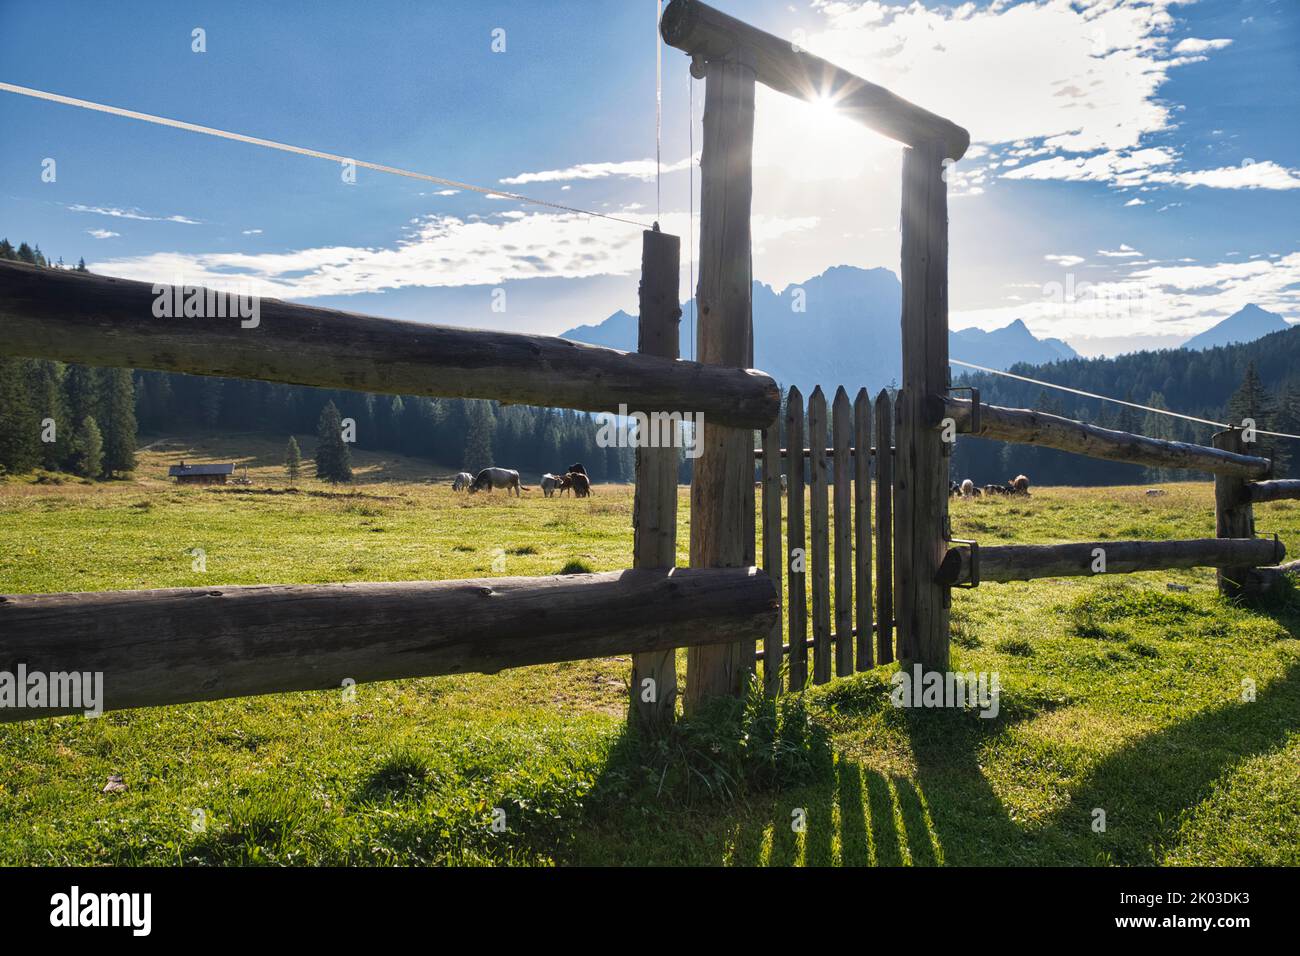 Italien, Venetien, Provinz Belluno, Cortina d' Ampezzo. Holzzaun durch ein Tor geschlossen, gefilterte Sonne und Schatten auf dem grünen Rasen Stockfoto